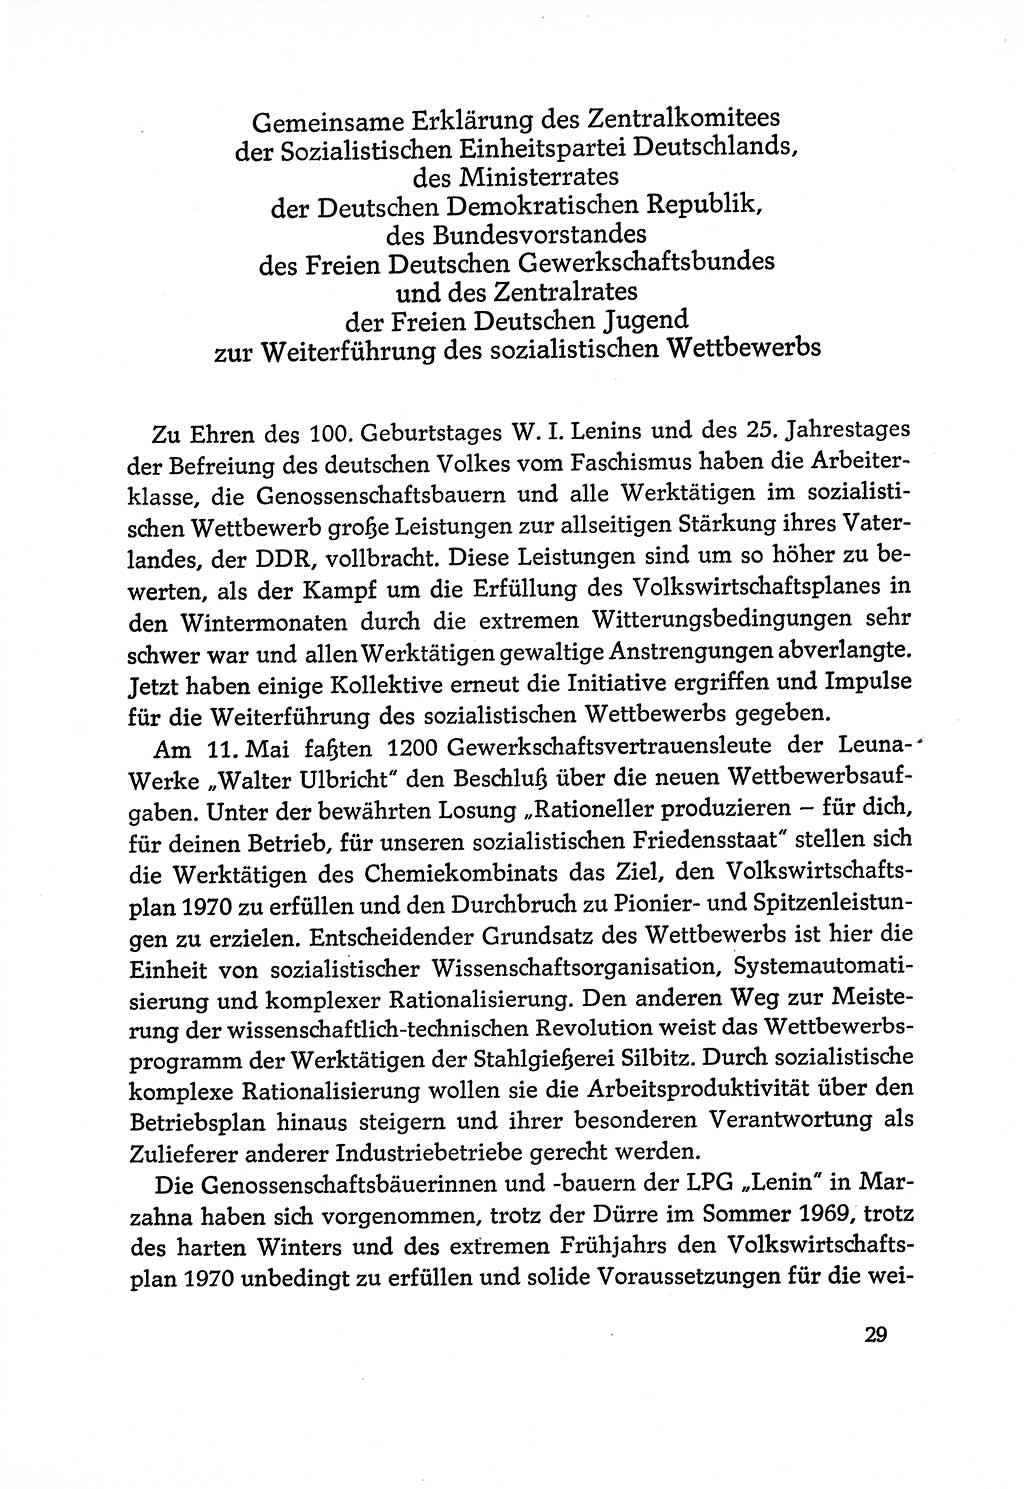 Dokumente der Sozialistischen Einheitspartei Deutschlands (SED) [Deutsche Demokratische Republik (DDR)] 1970-1971, Seite 29 (Dok. SED DDR 1970-1971, S. 29)